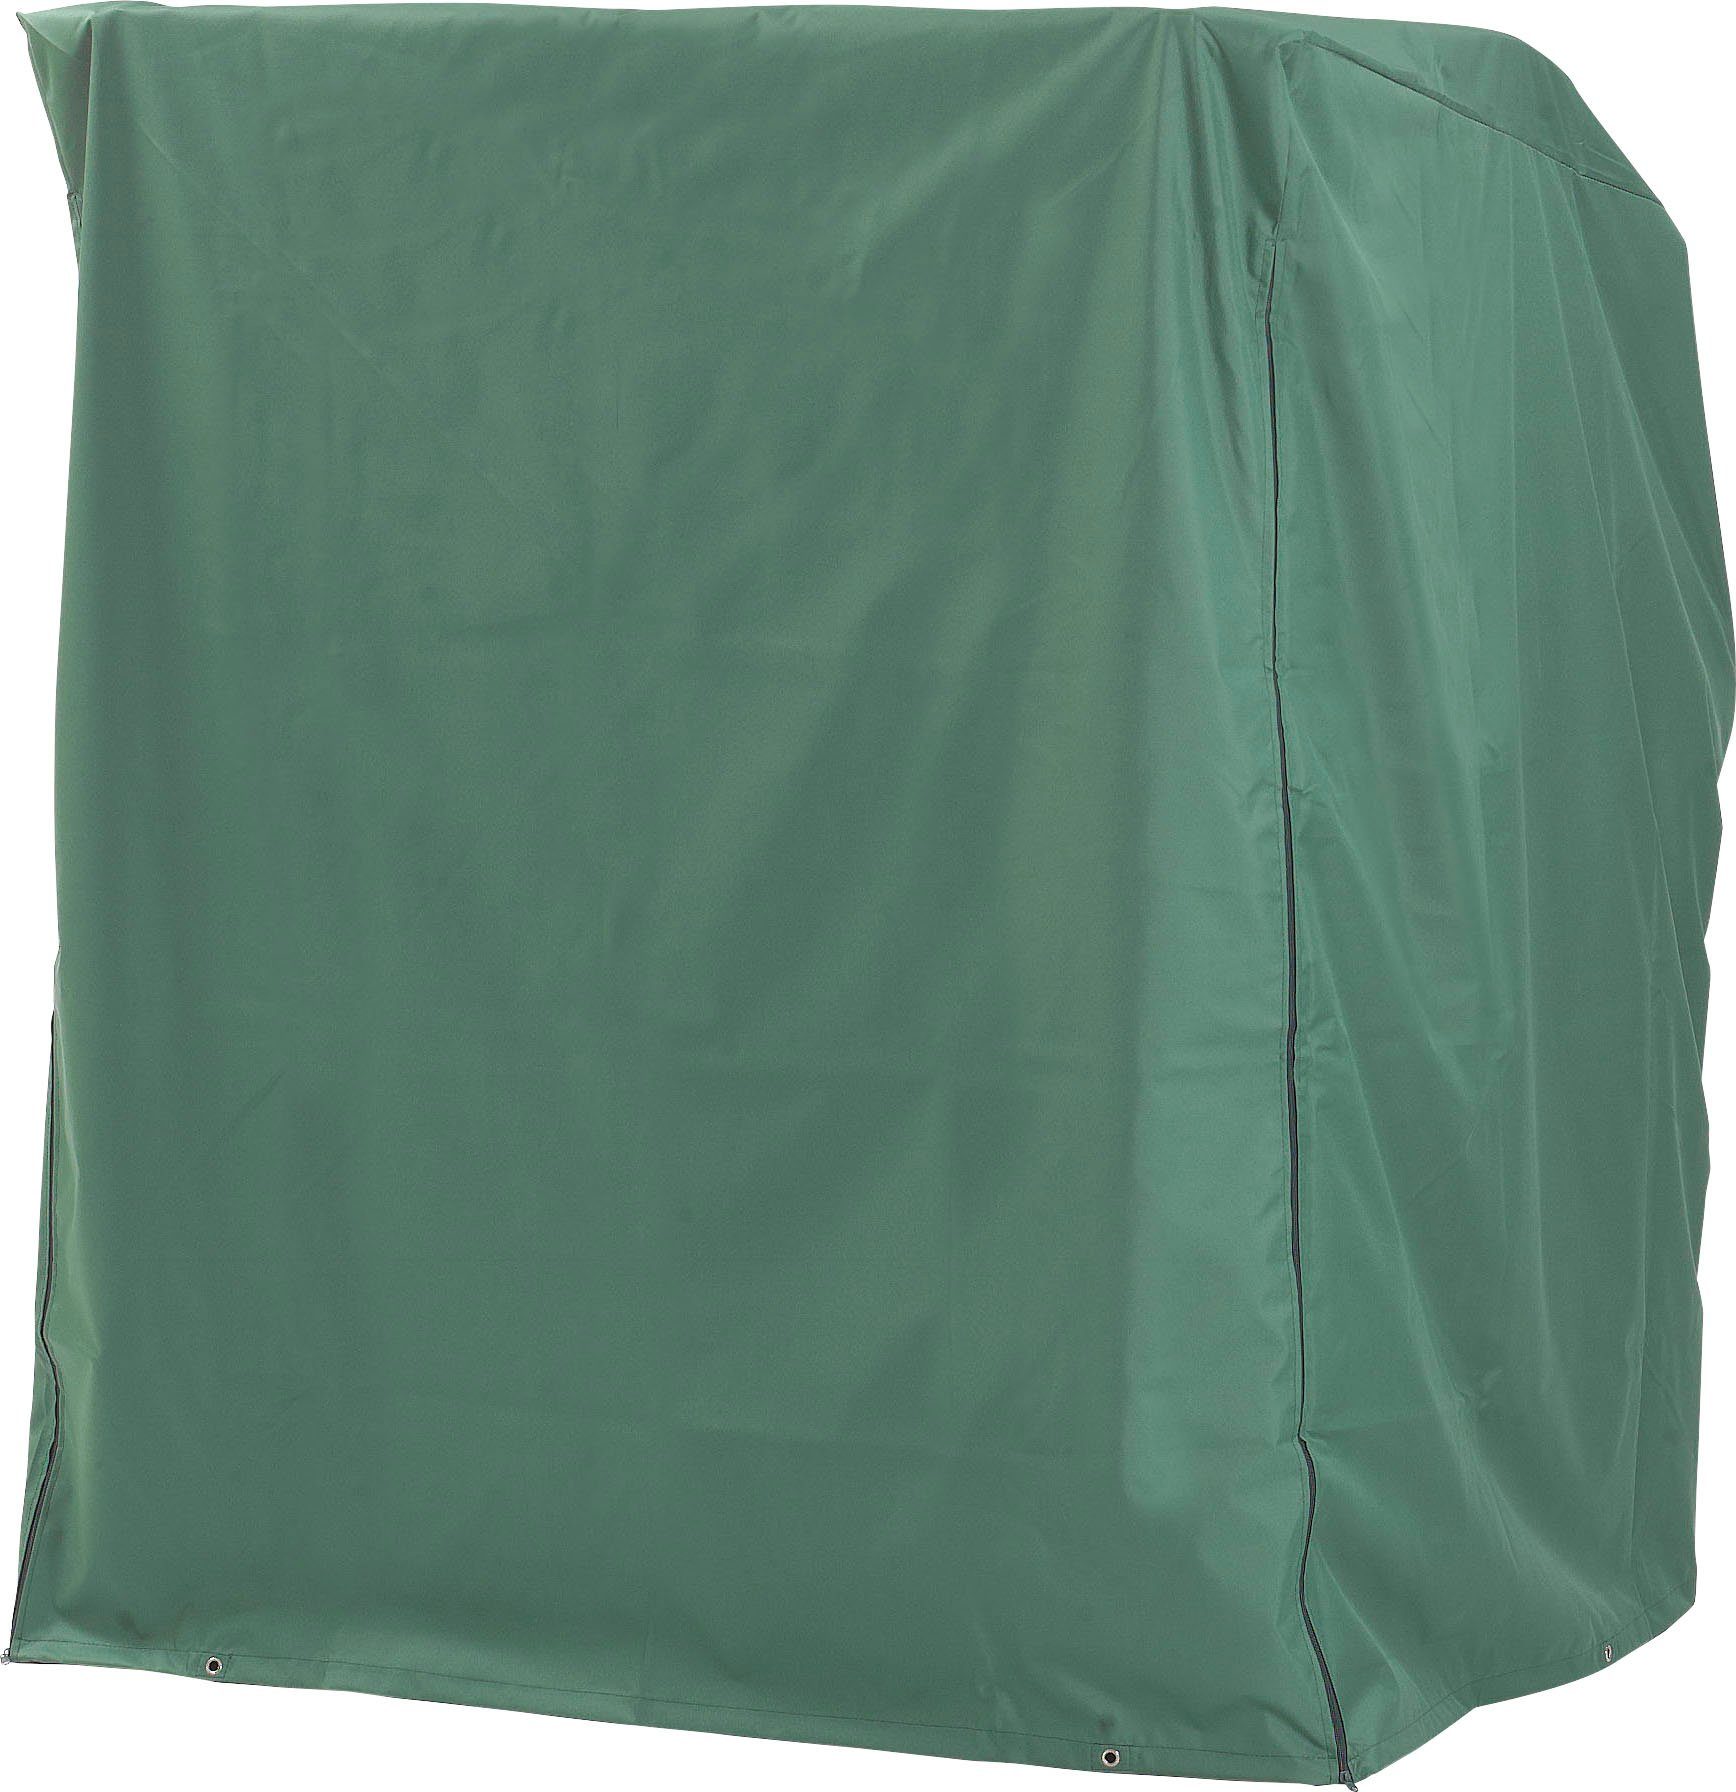 SunnySmart Strandkorb-Schutzhülle, 2-Sitzer XL grün,mittelschwere  Ausführung,ca.BxLxH: 155x105x160 cm | Strandkorb-Schutzhüllen